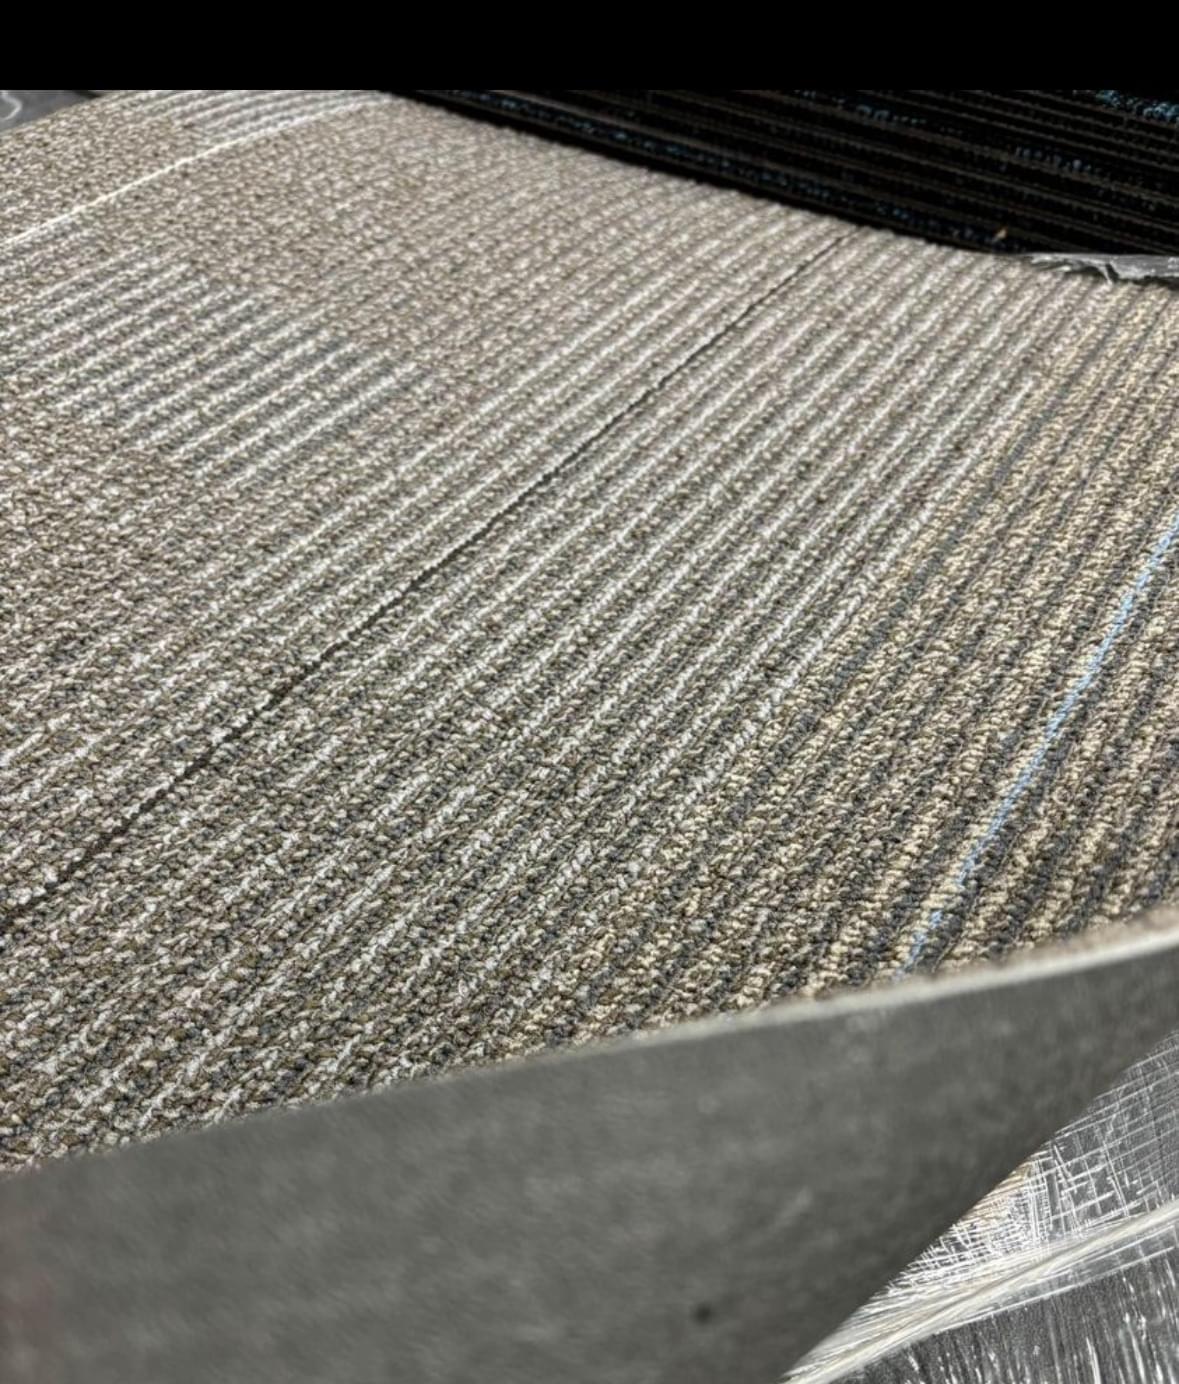 Light Gray Basement Carpet Tiles Commercial Grade Floor New for Store or office floor